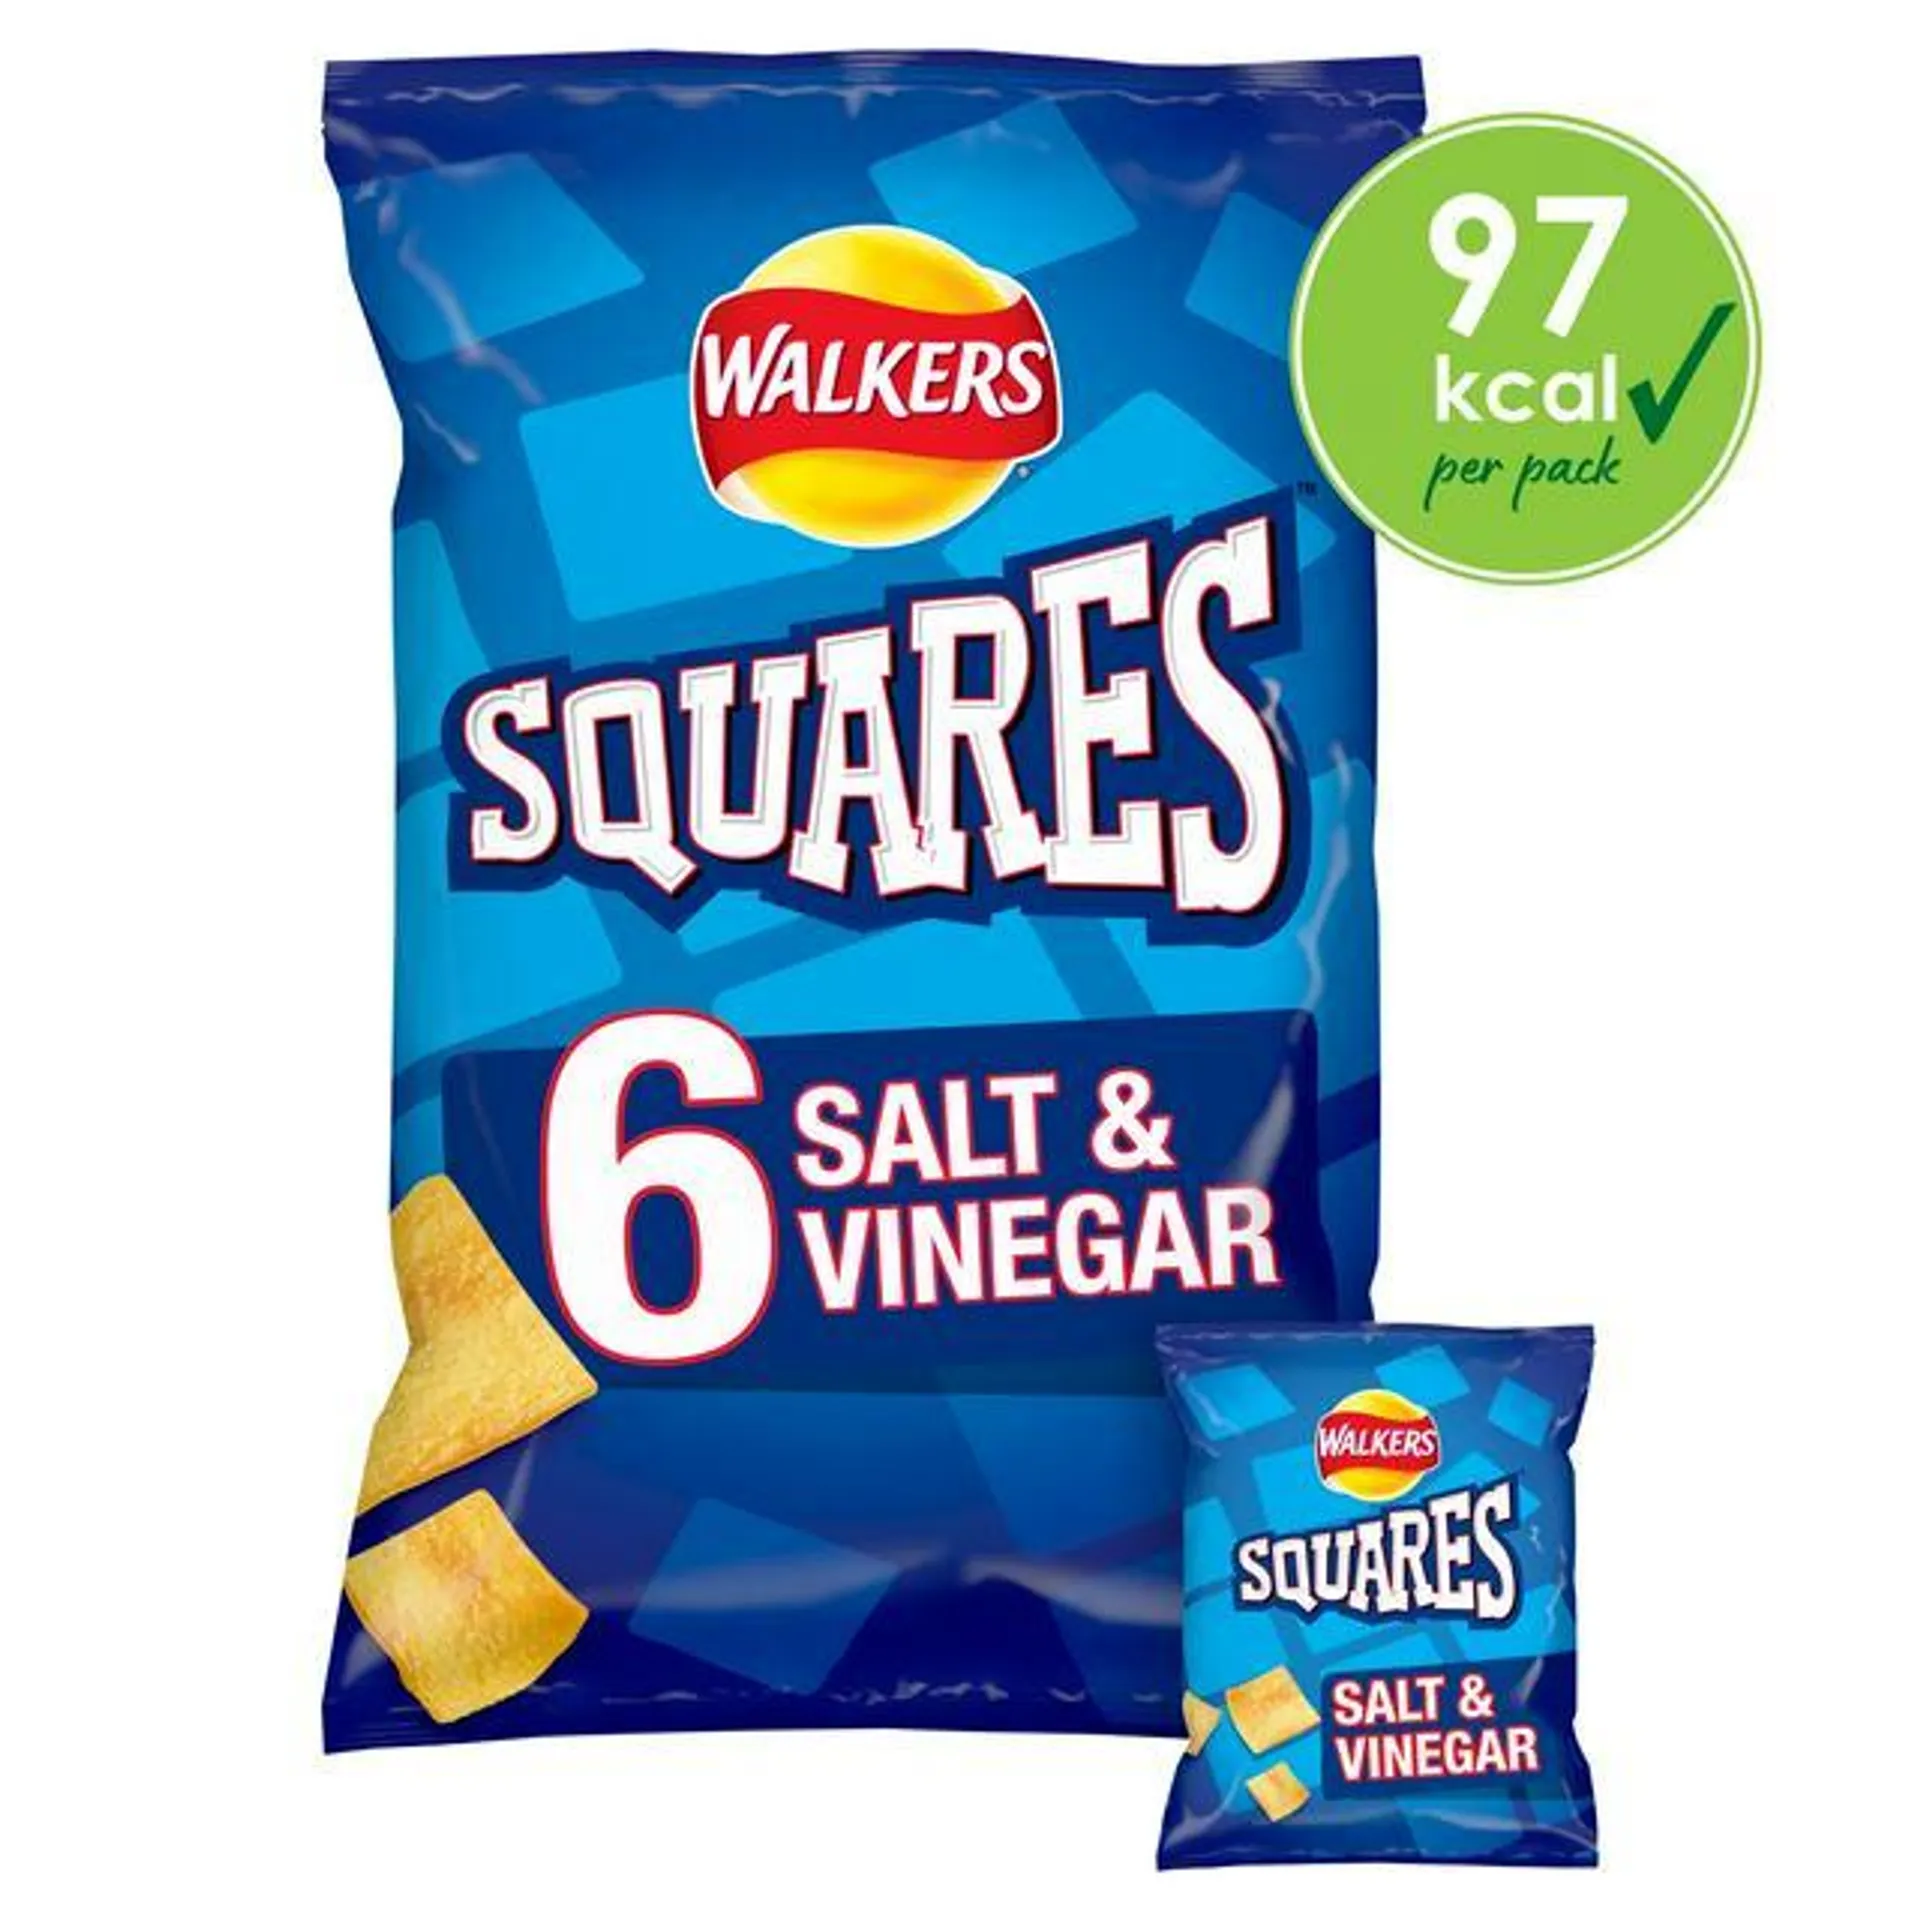 Walkers Squares Salt & Vinegar Multipack CrispsSnacks 6x22g